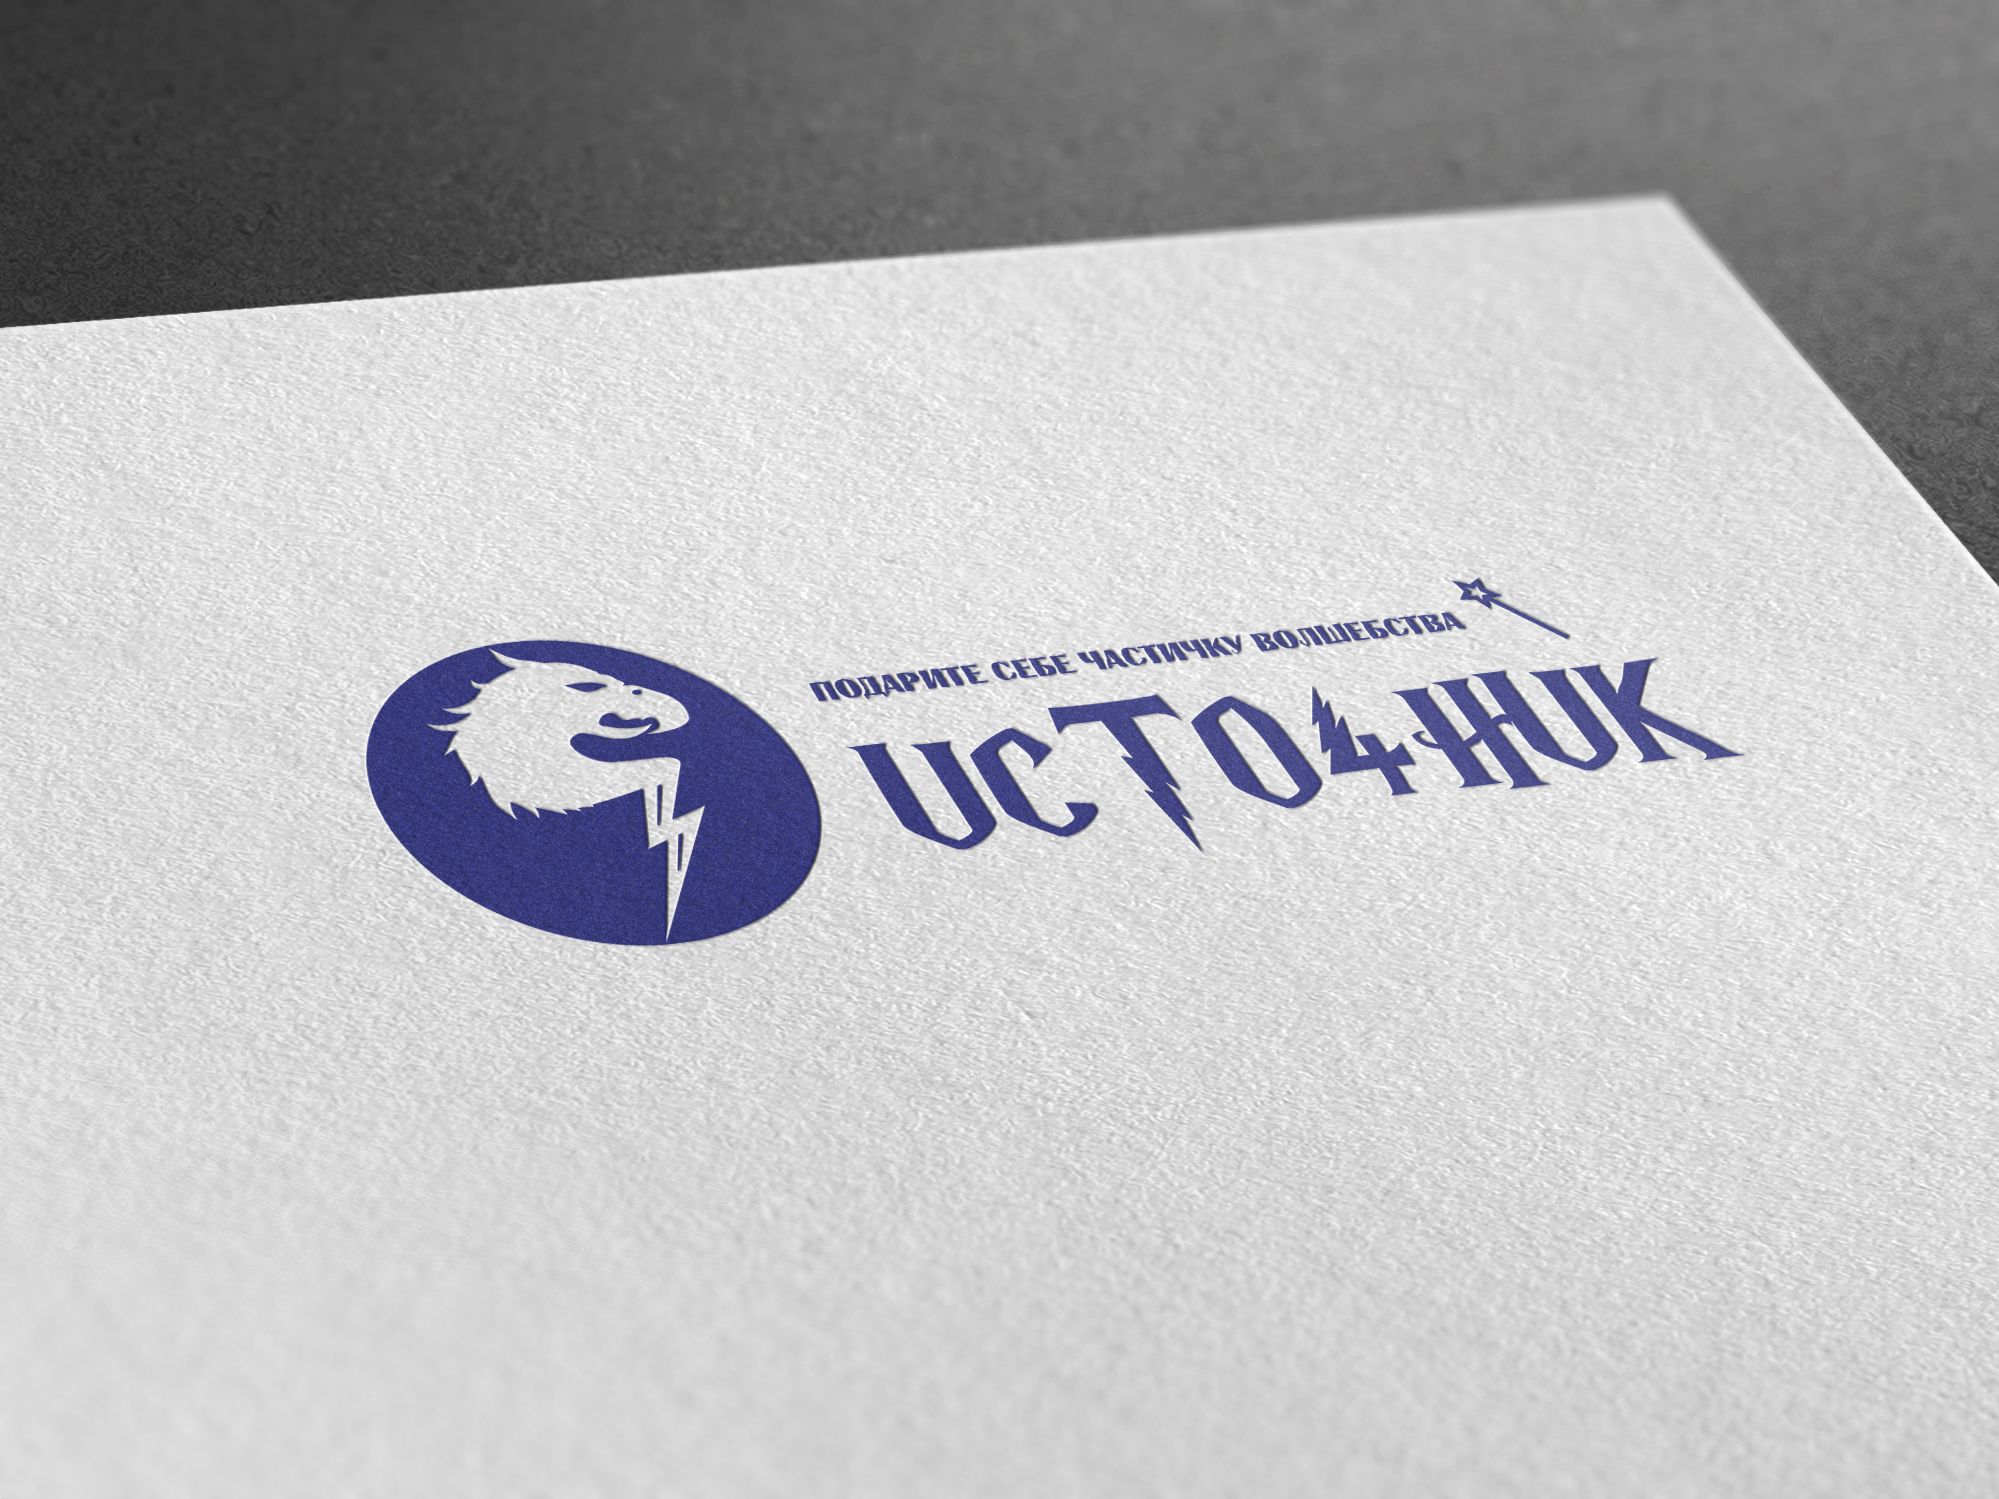 Логотип для магазина Украшений из Фильмов - дизайнер U4po4mak